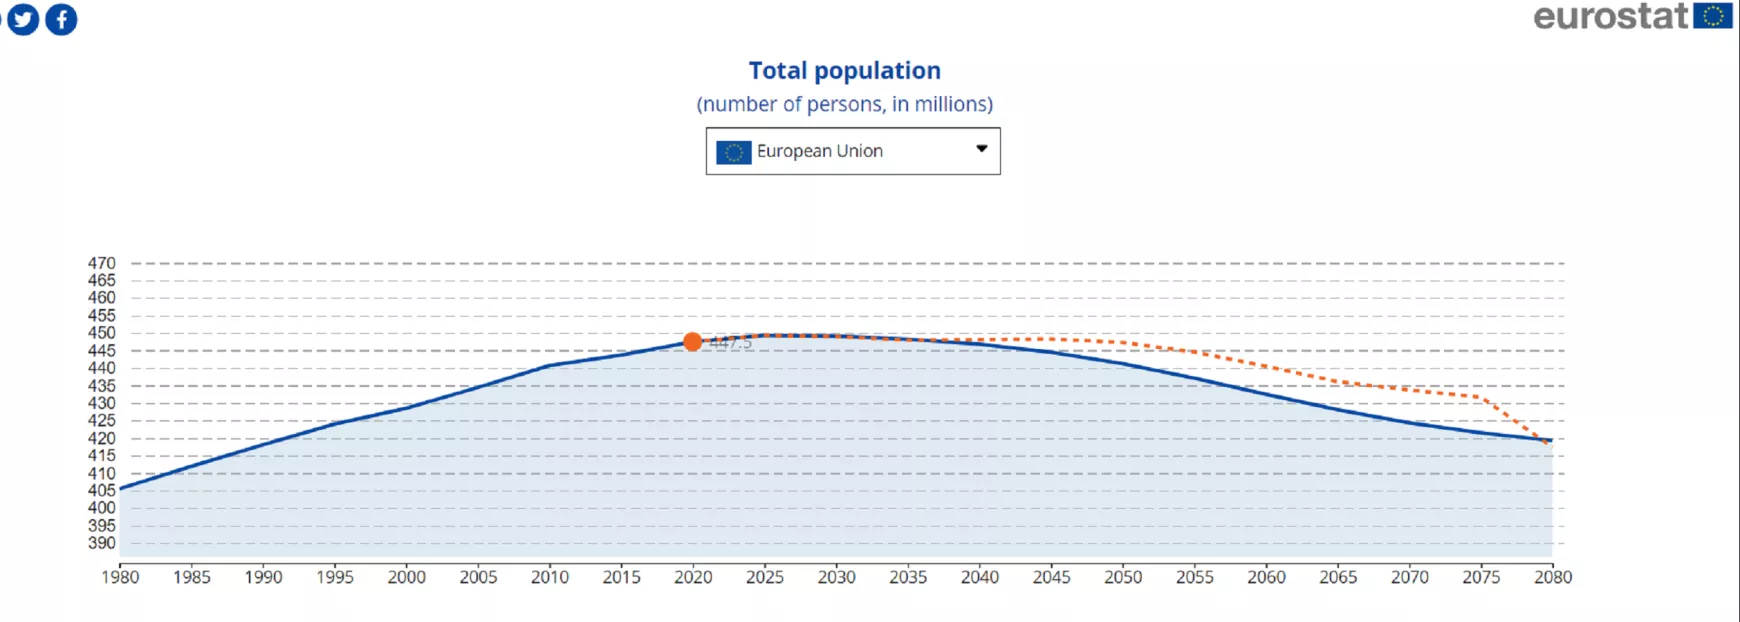 Európai Unió népességének jelenlegi trendek alapján meghatározott alakulása